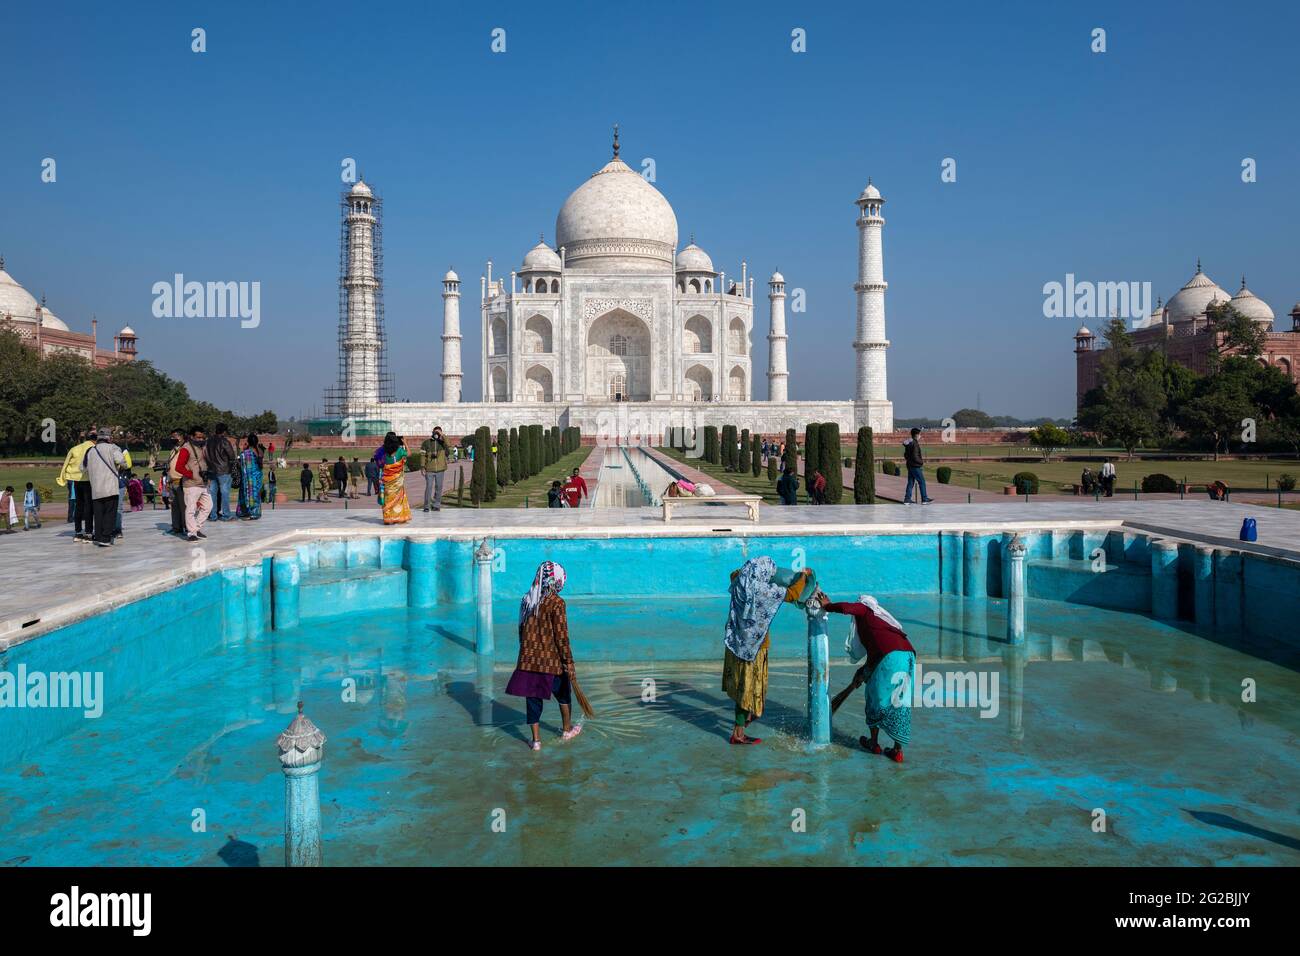 Lavoratrici in corso di pulizia di una delle piscine nel complesso Taj Mahal come monumento si apre per il pubblico dopo la prima ondata covid-19 in India. Foto Stock